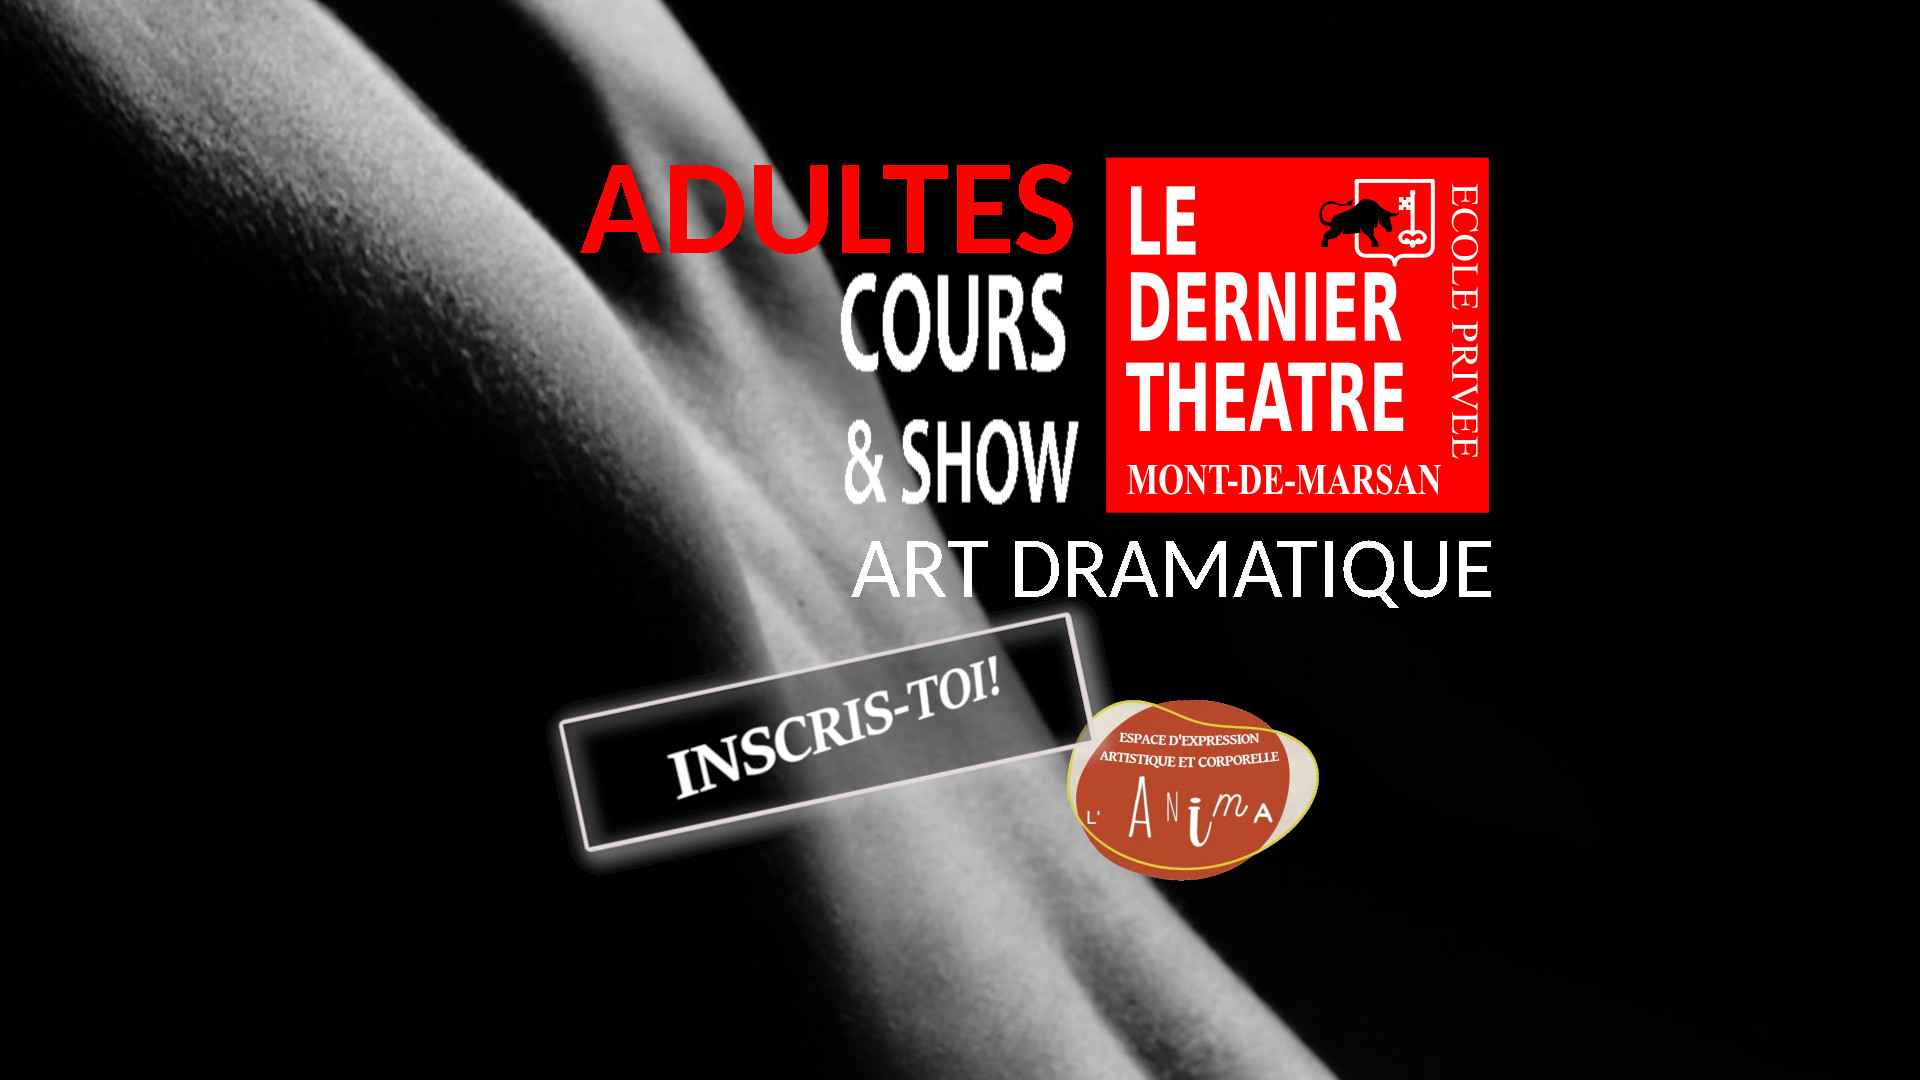 Le dernier théâtre - École privée art Dramatique - Cours ADULTES